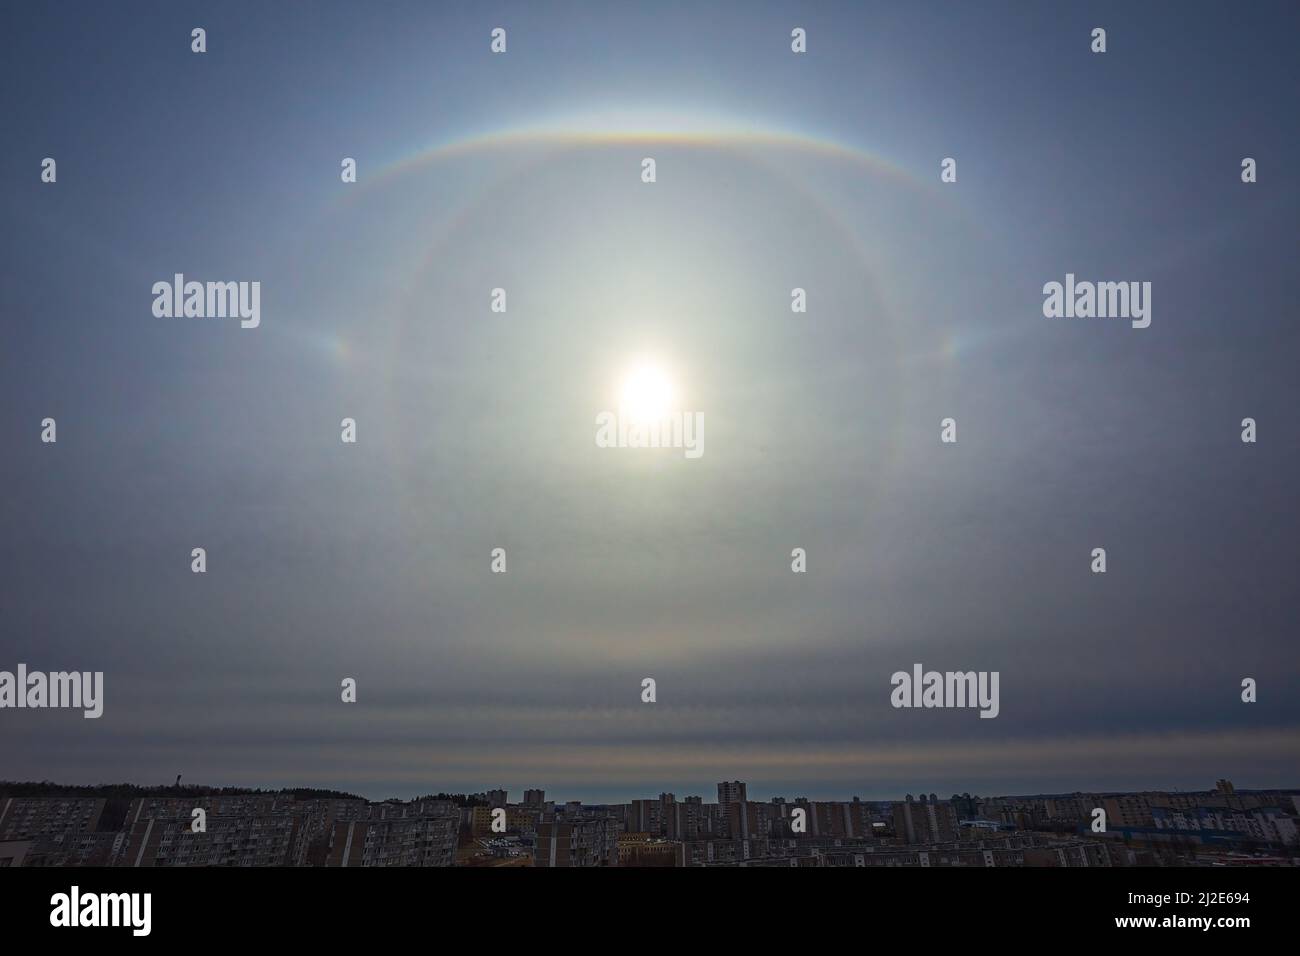 Sehr seltenes atmosphärisches Phänomen, genannt Sonnenhalo, verschiedene Sonnenhalos, die am Himmel in der Stadt erscheinen Stockfoto